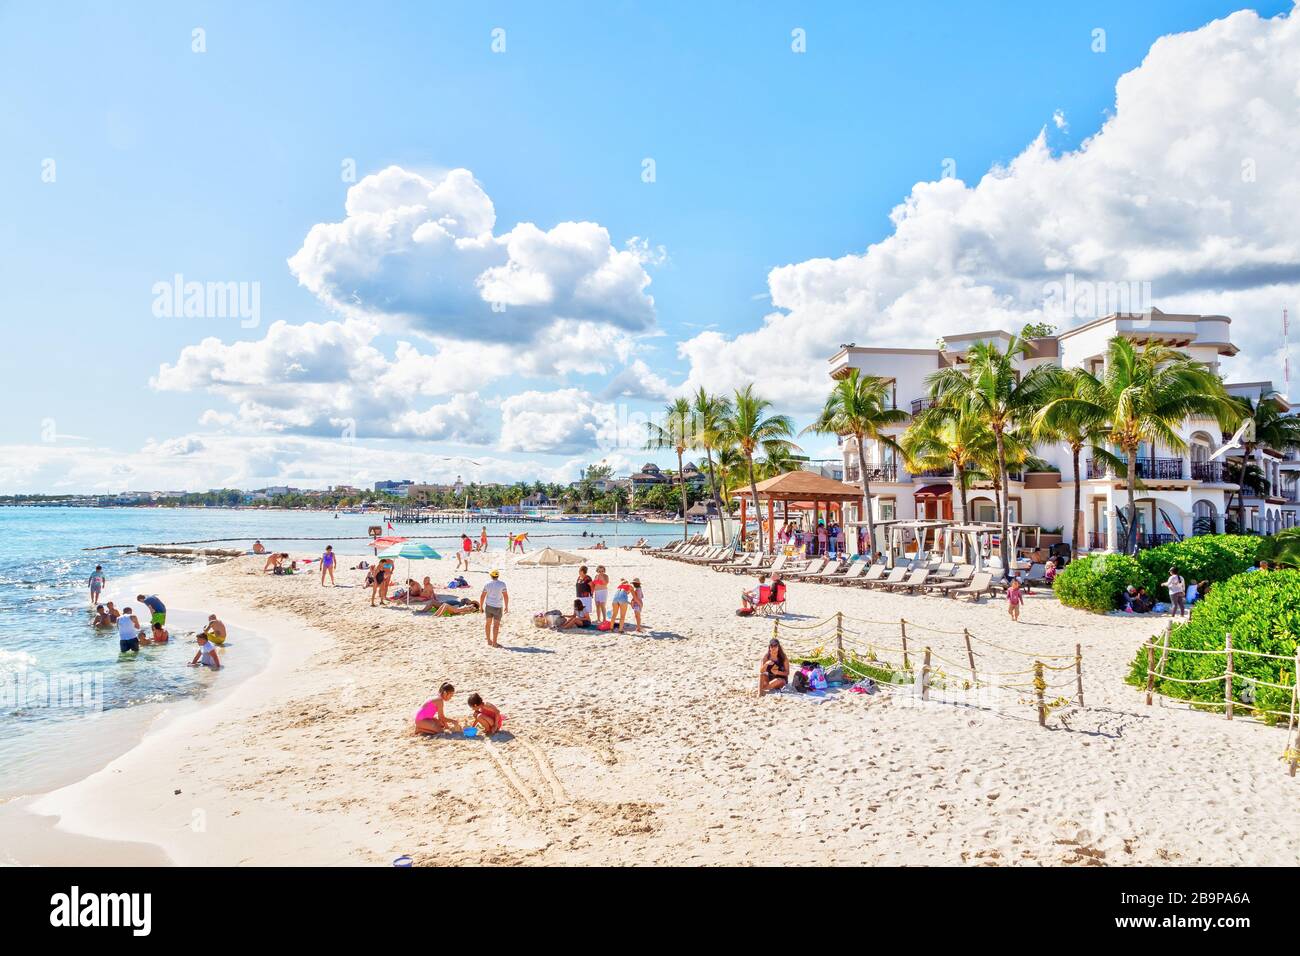 Playa del Carmen, Messico - 26 dicembre 2019: Spiaggia affollata piena di  gente che gioca e prende il sole a Playa del Carmen nella Riviera Maya sui  Caraibi Foto stock - Alamy